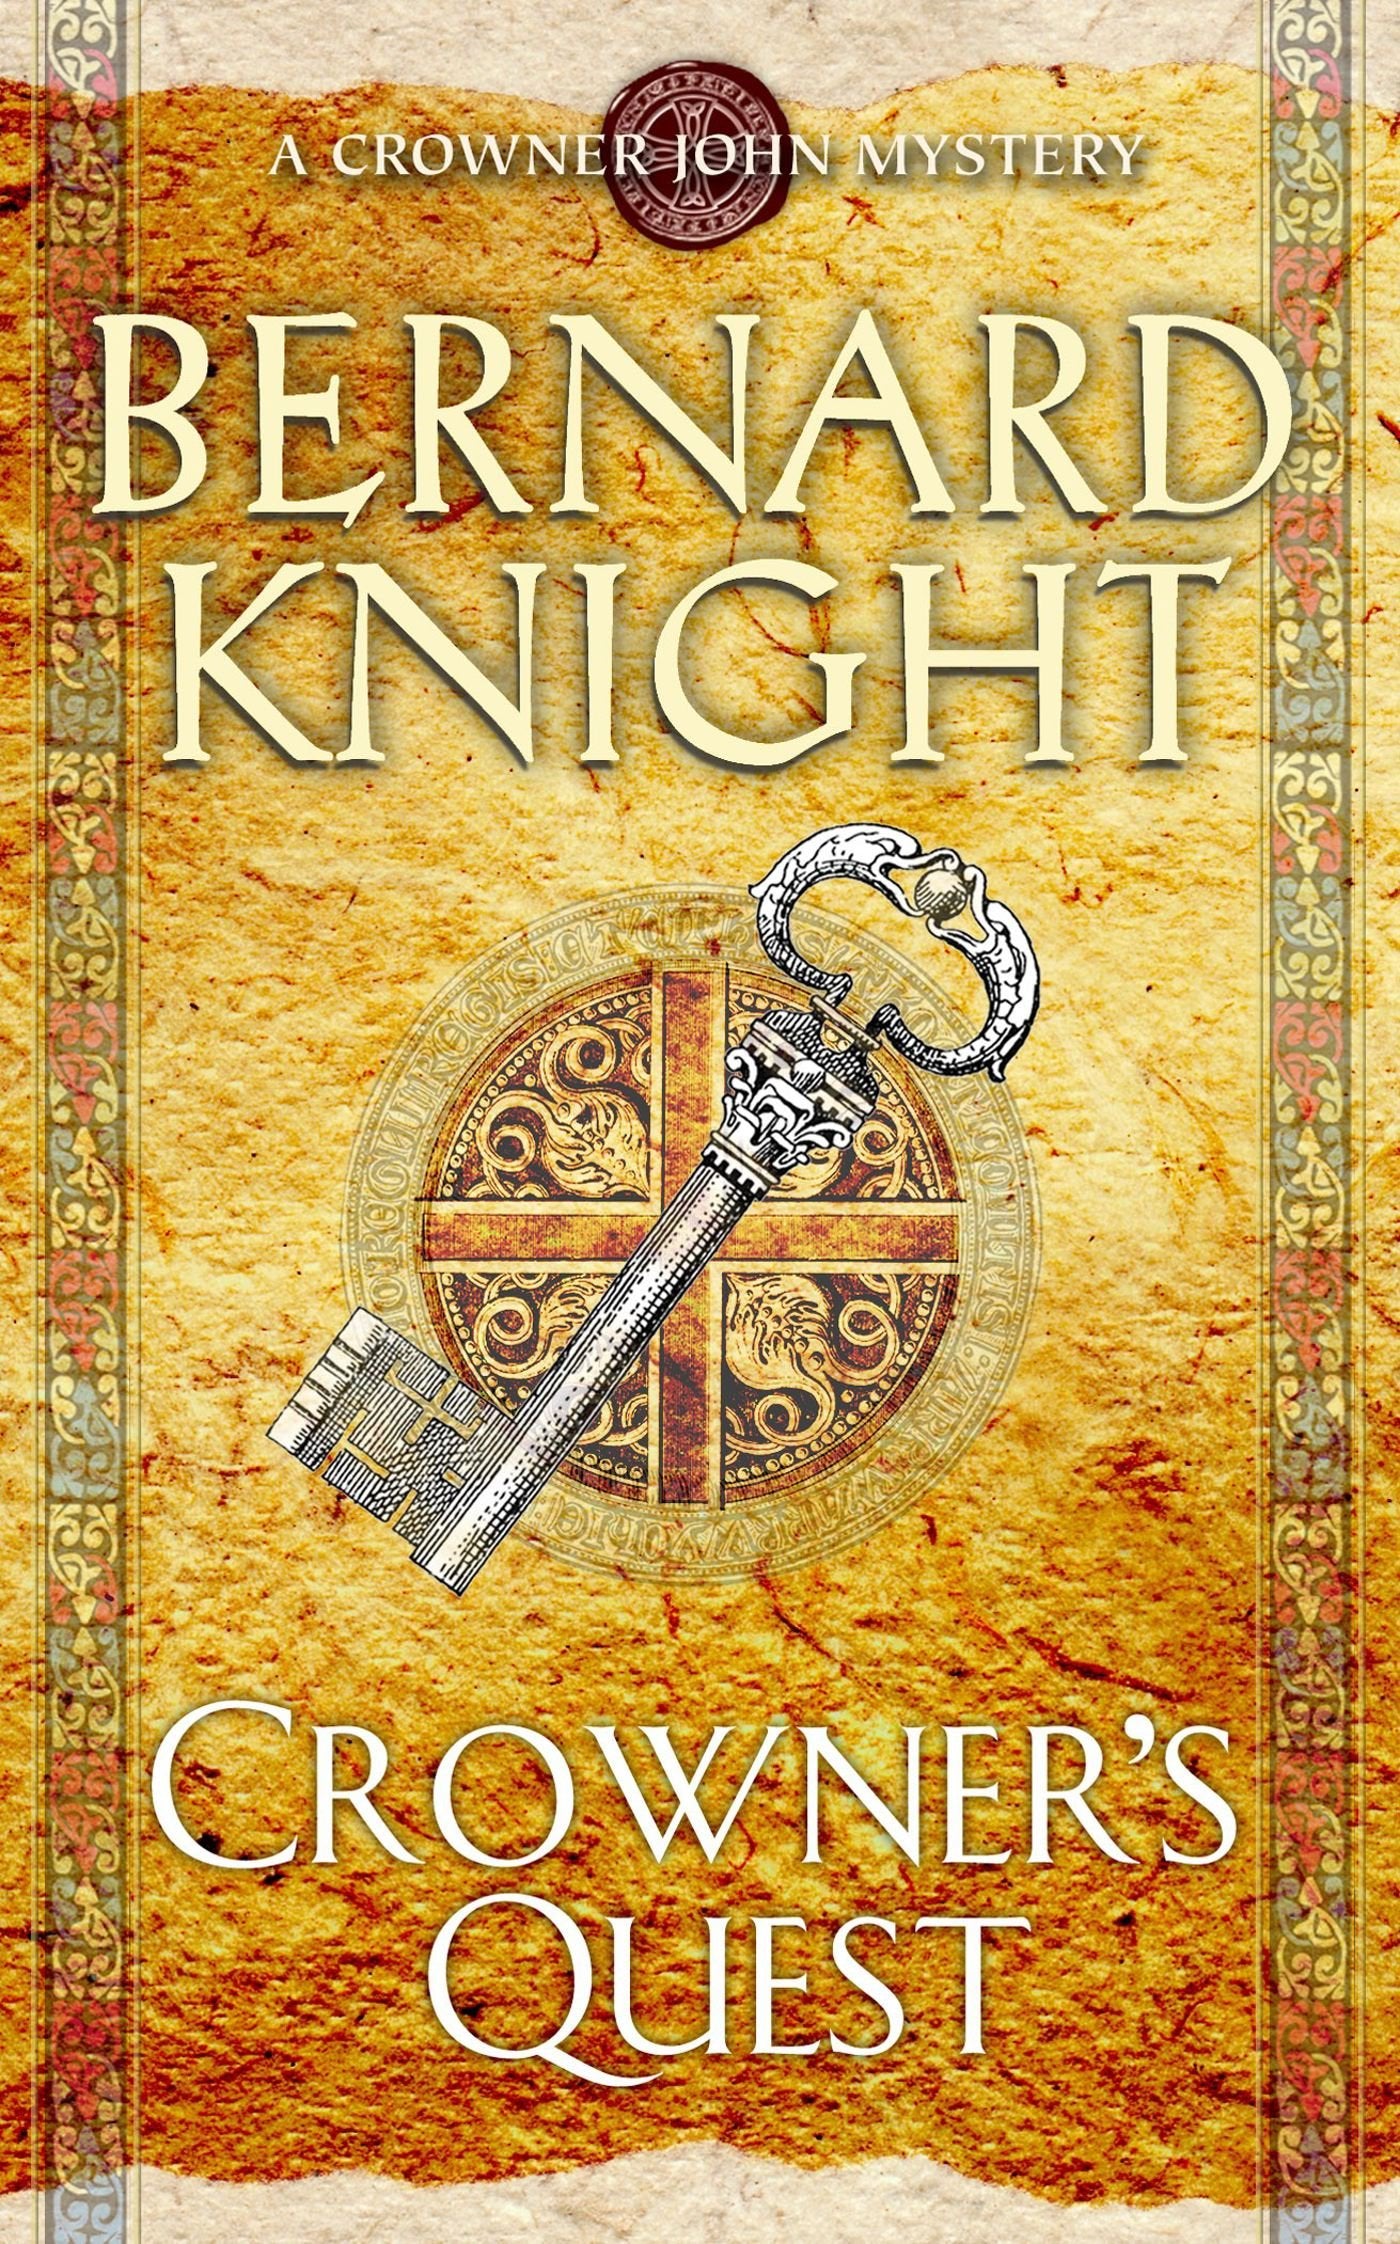 Crowner's Quest by Bernard Knight te koop op hetbookcafe.nl